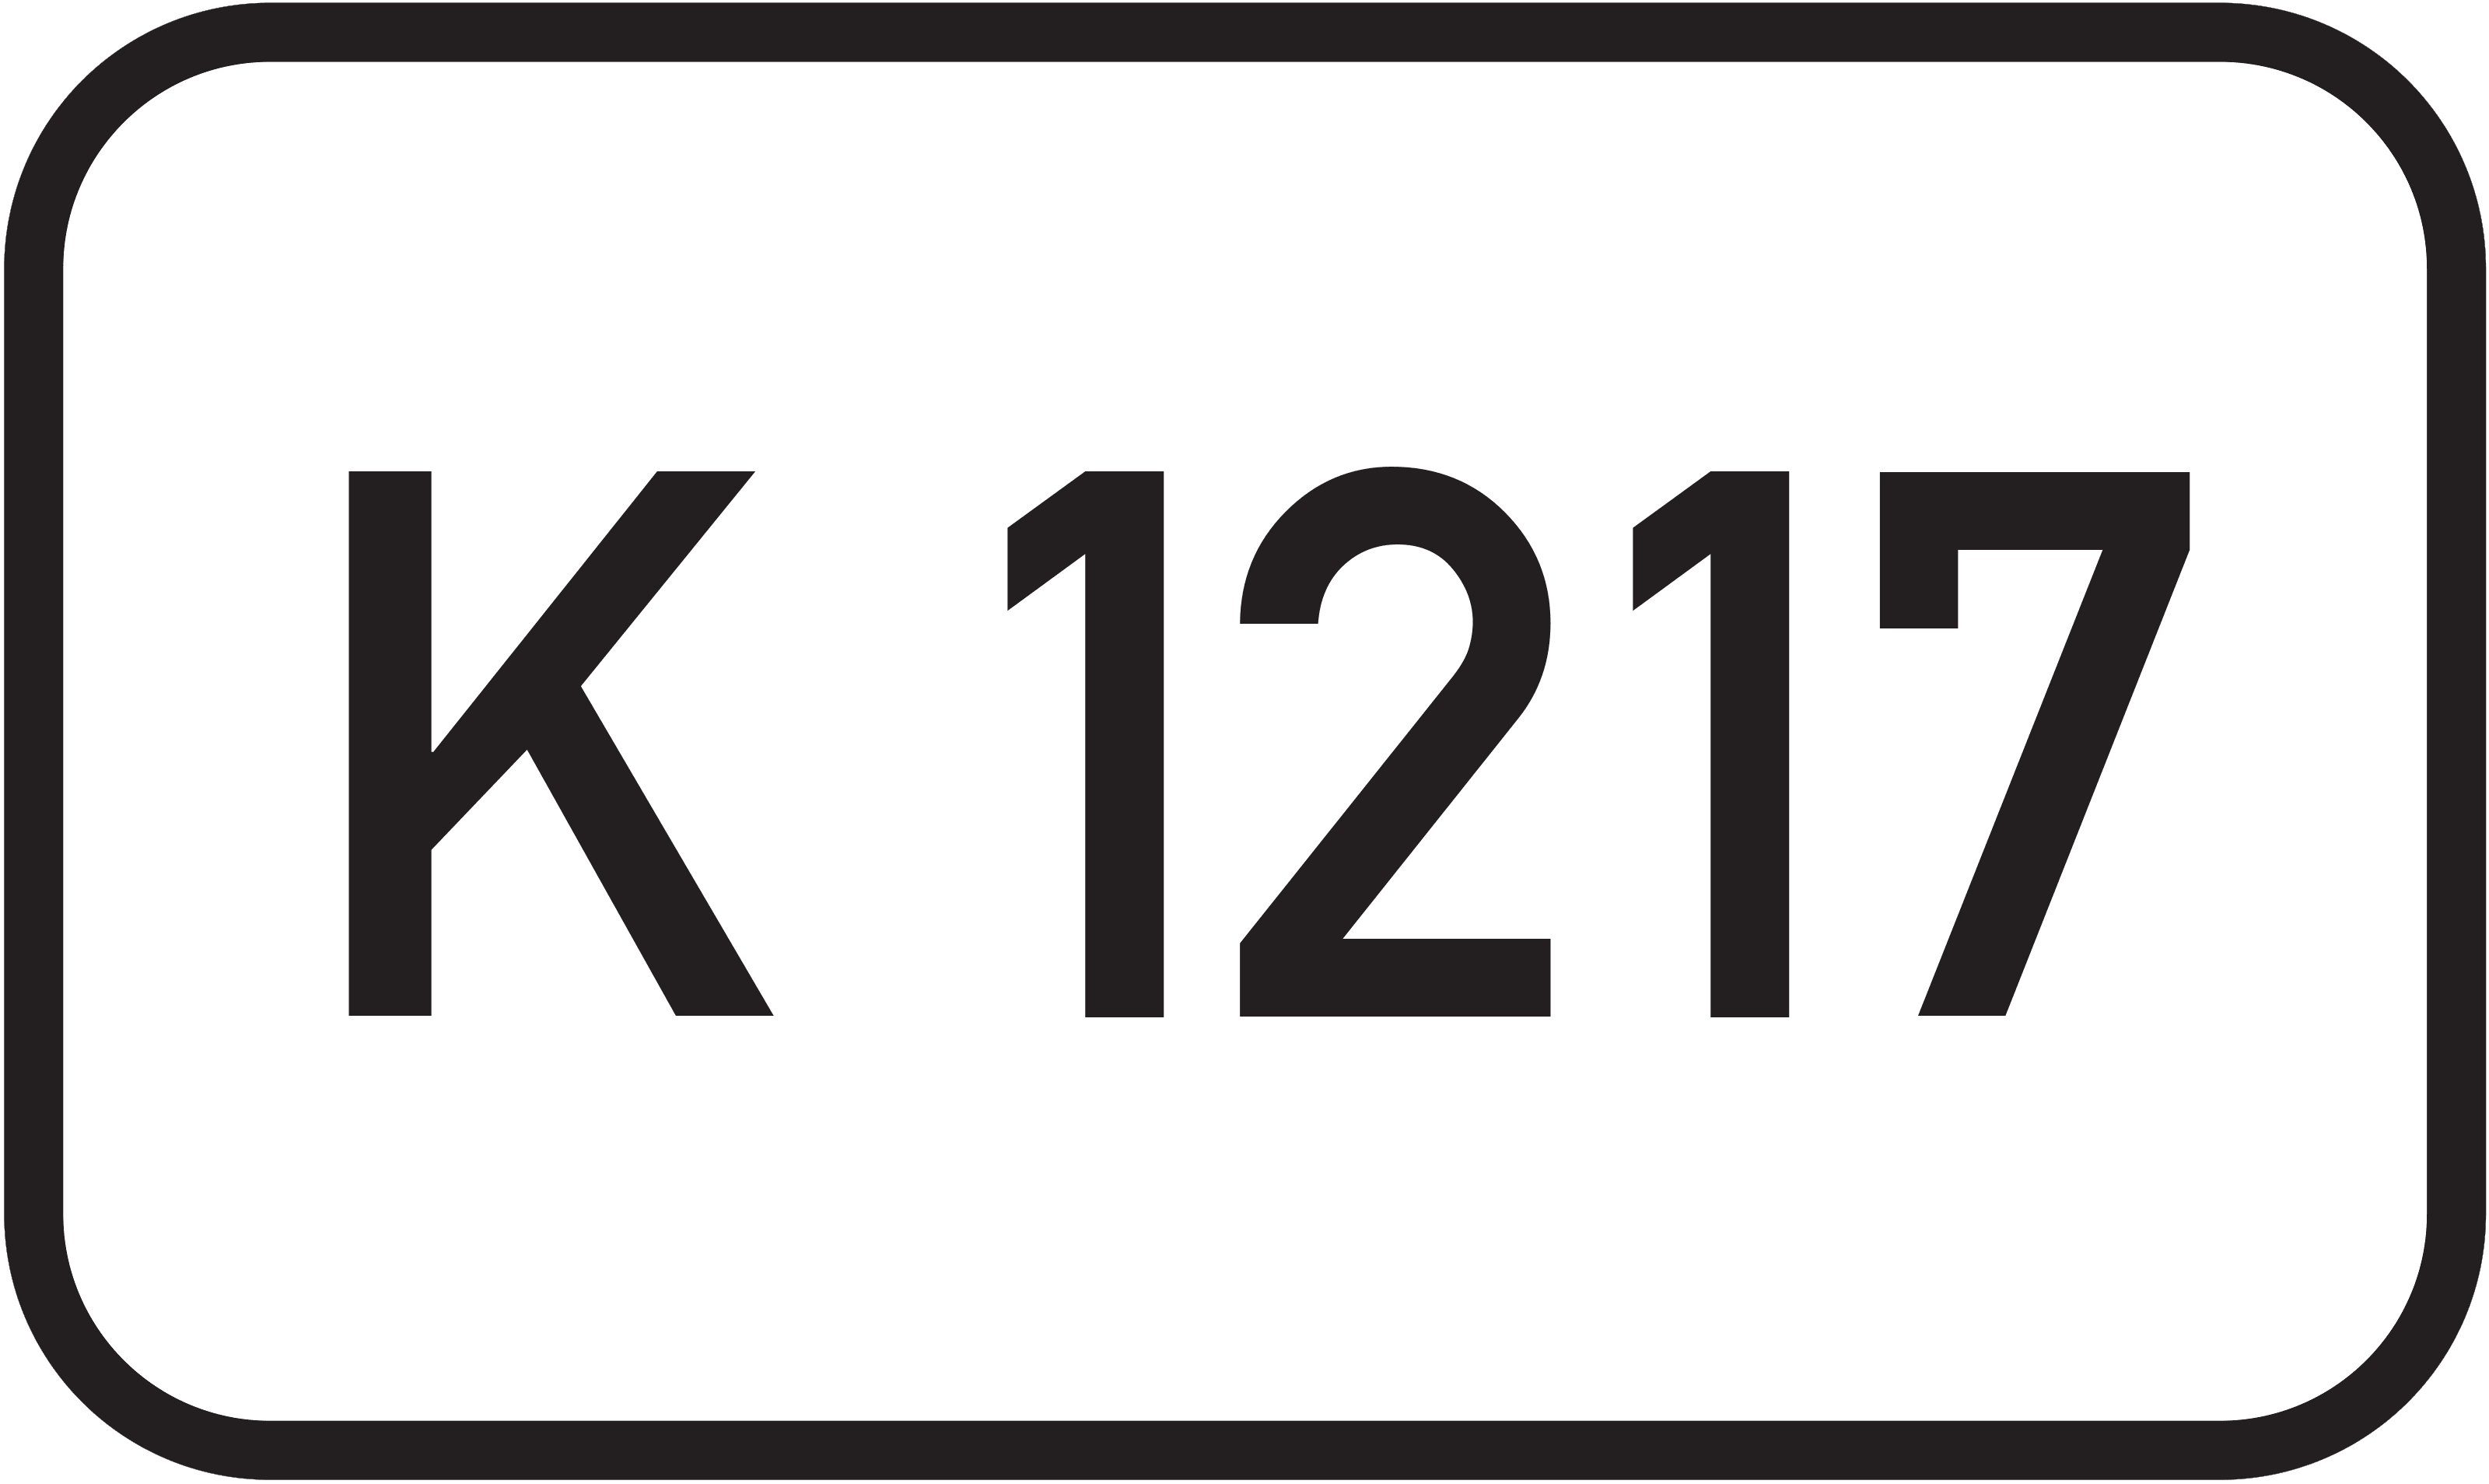 Kreisstraße K 1217